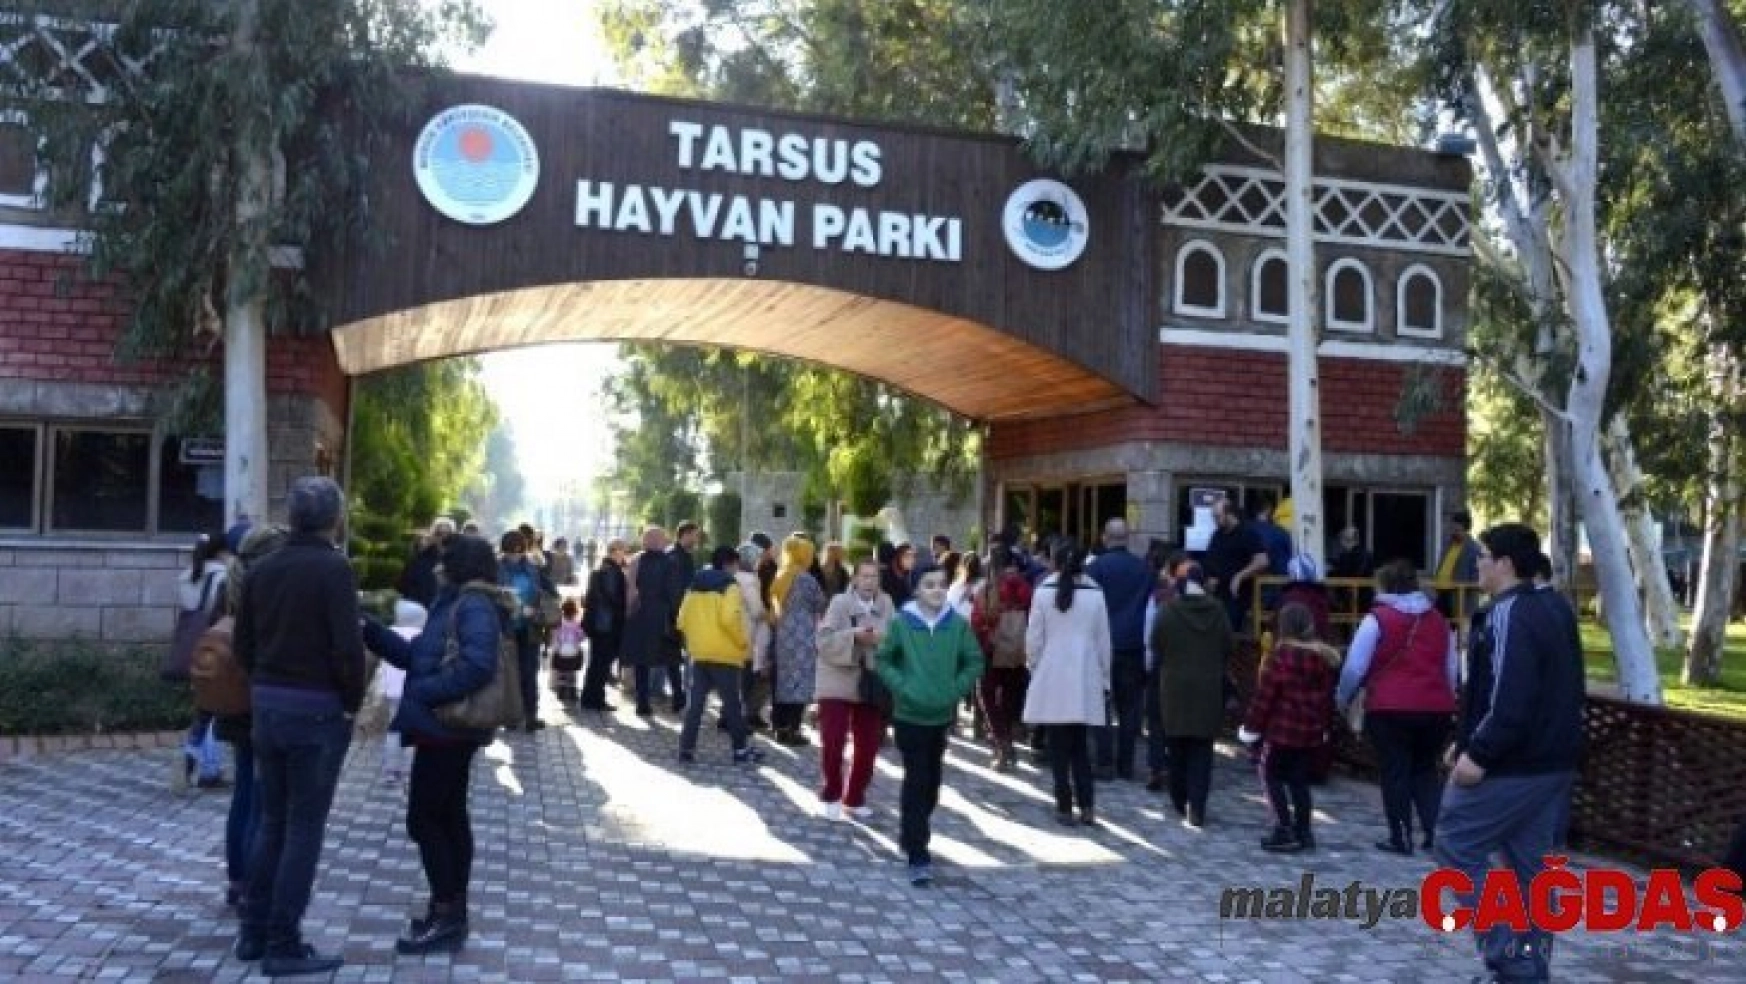 Tarsus Hayvan Parkı, yarıyıl tatilinde öğrencilere ücretsiz olacak